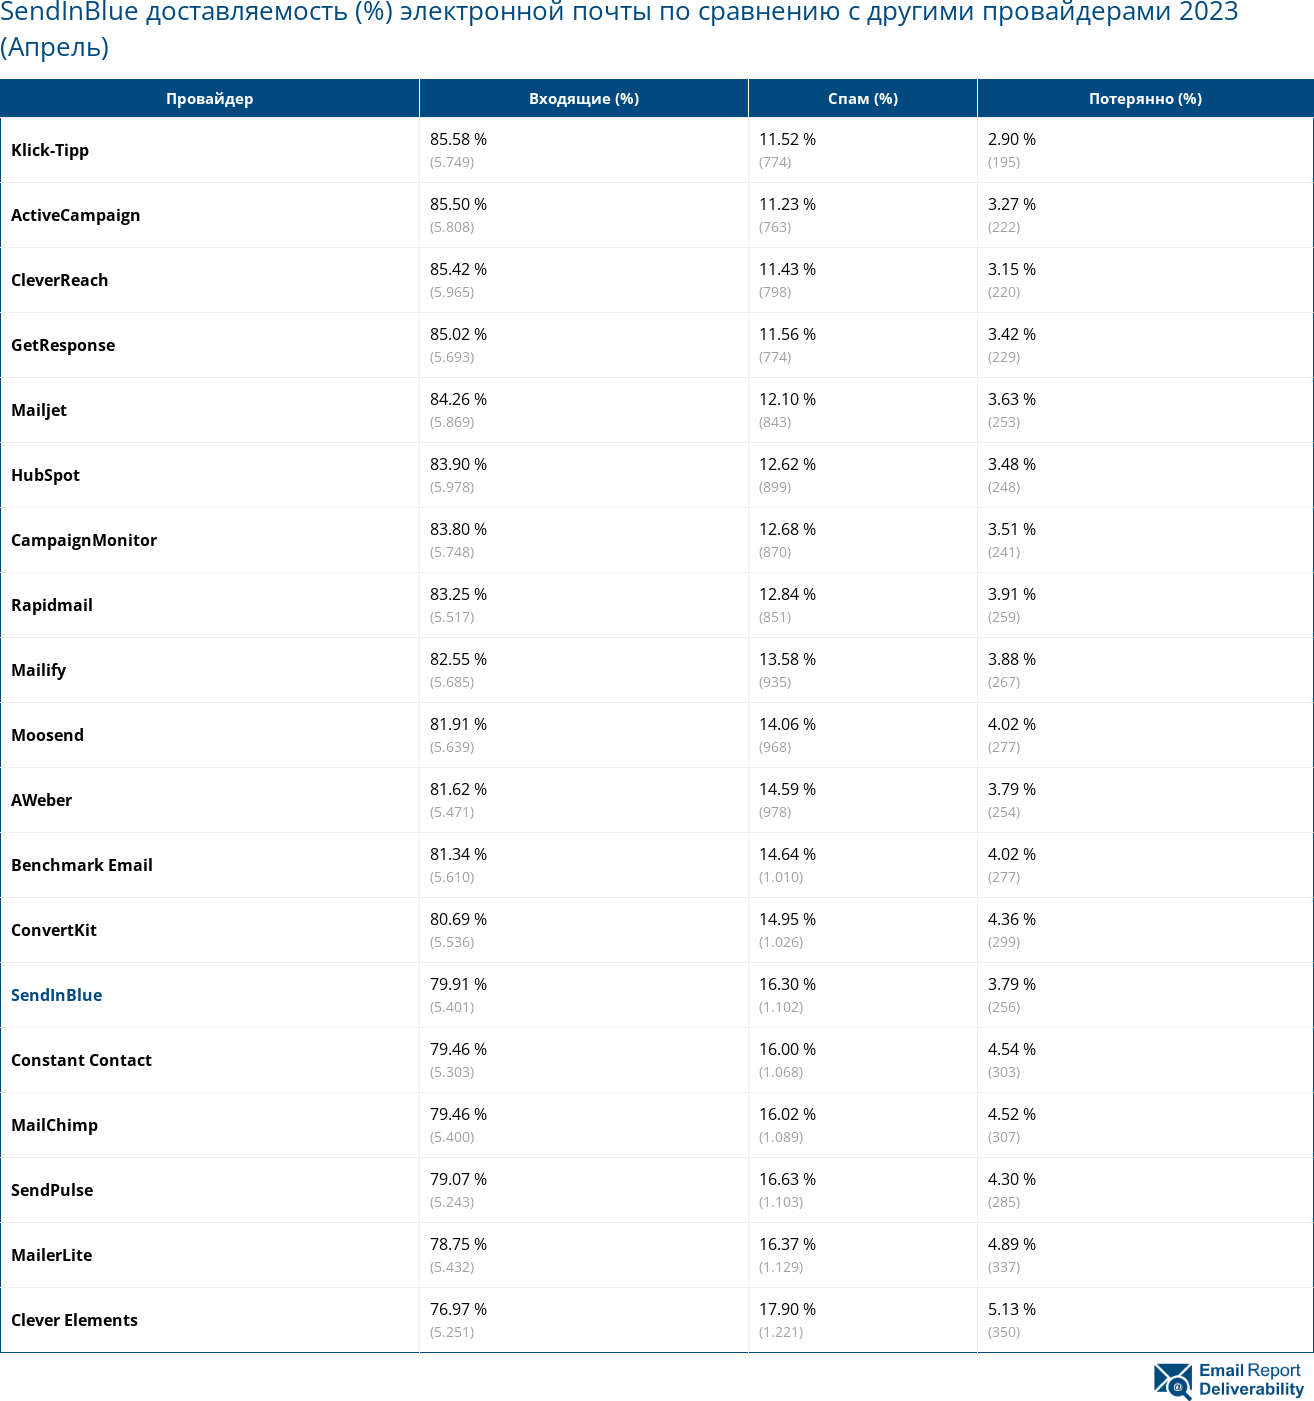 SendInBlue доставляемость (%) электронной почты по сравнению с другими провайдерами 2023 (Апрель)